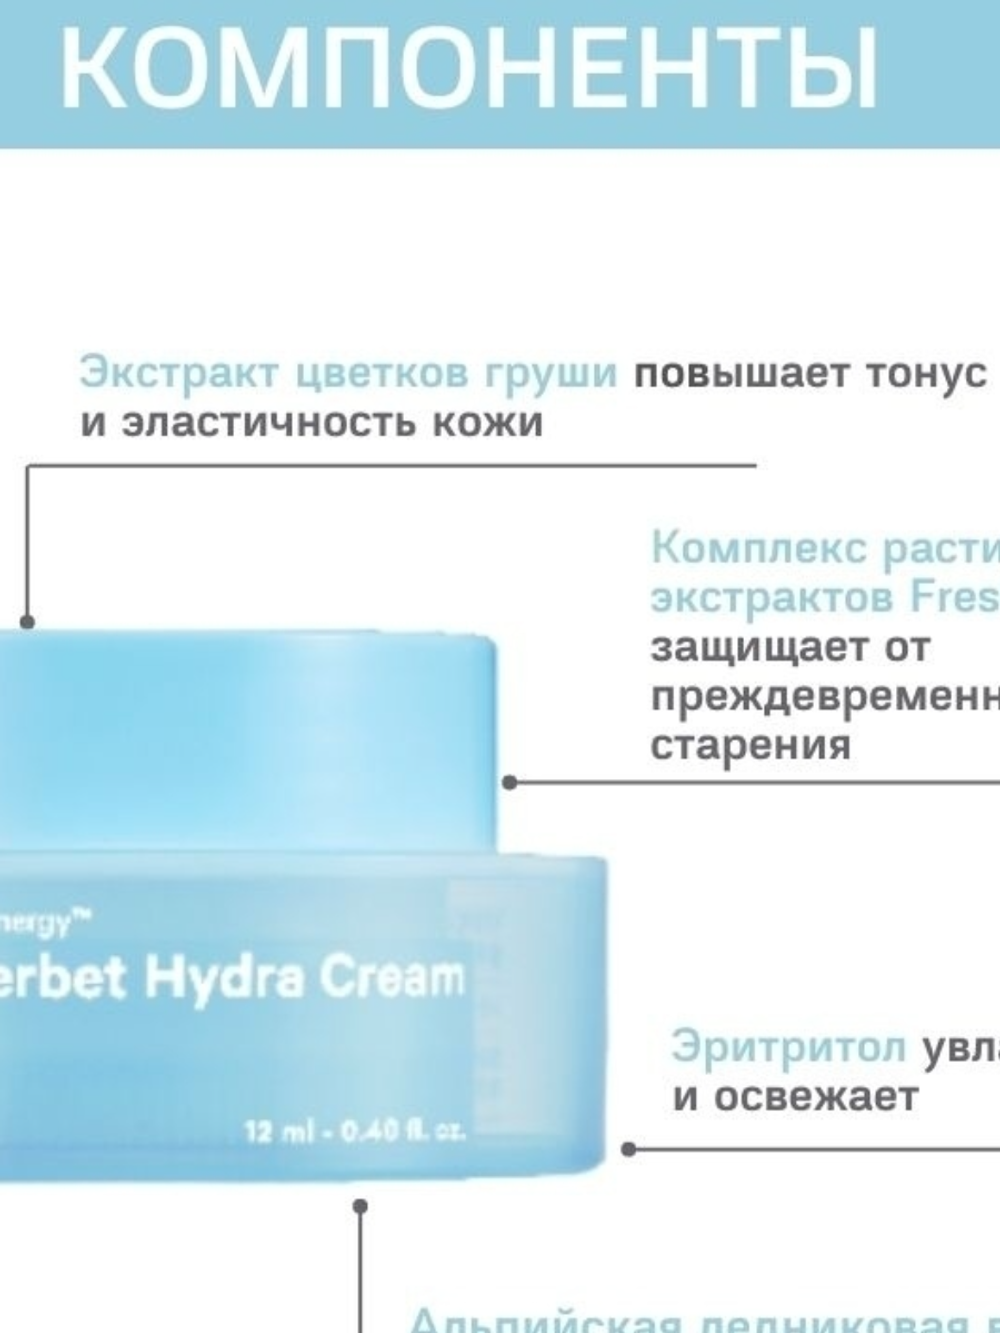 Крем-щербет для интенсивного увлажнения Dr.F5 Blue sherbet hydra cream, 50 мл